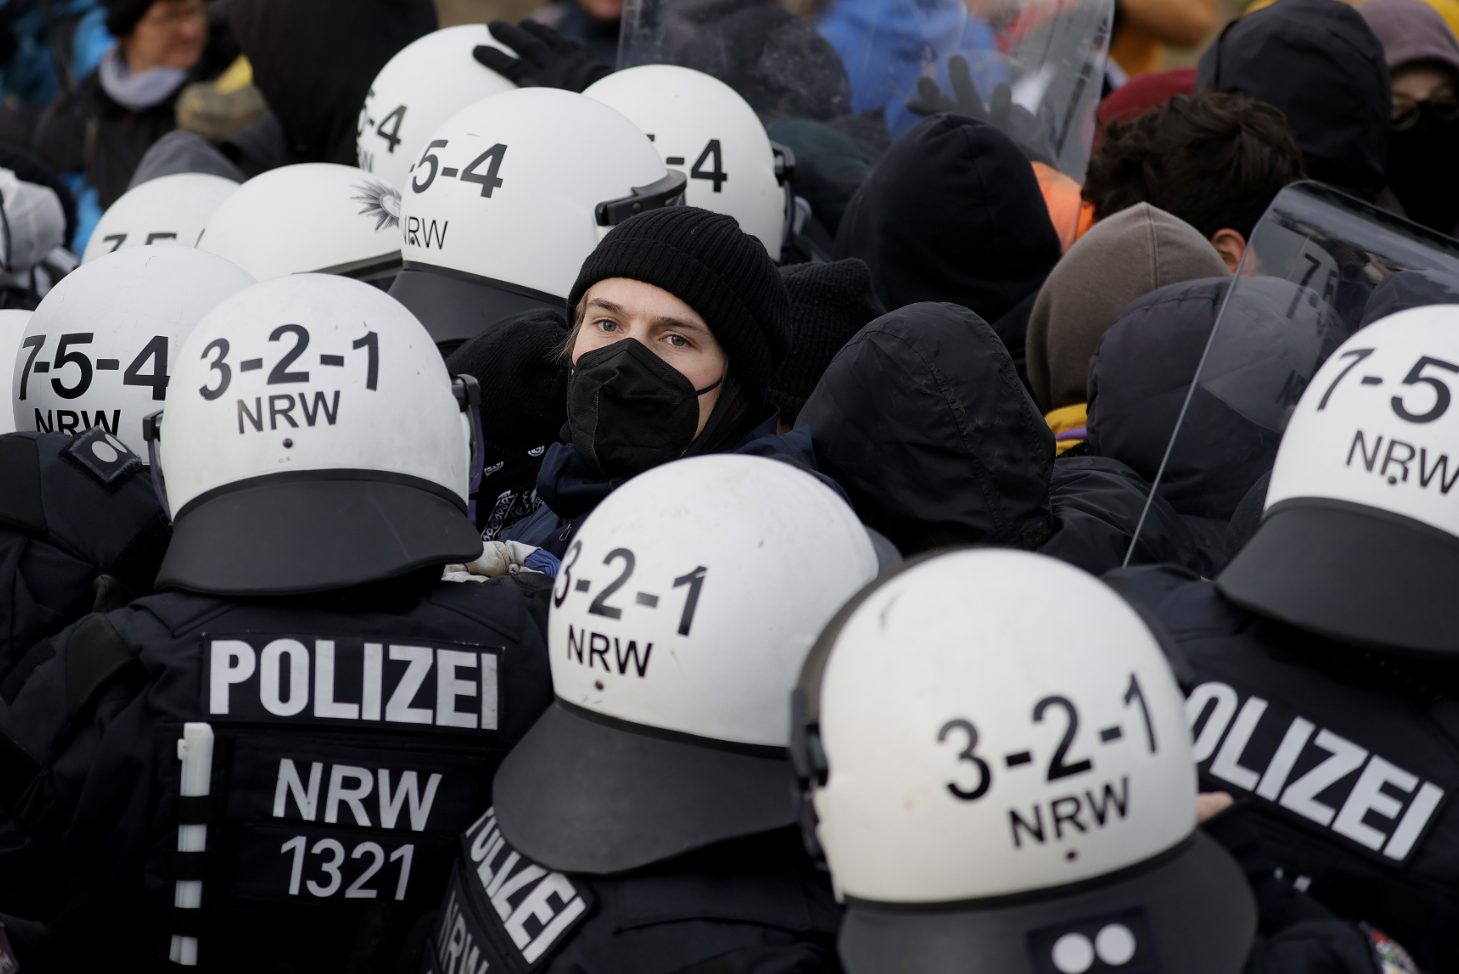 Policías y manifestantes se enfrentan cerca de la aldea de Luetzerath, Alemania, este martes. EFE/RONALD WITTEK